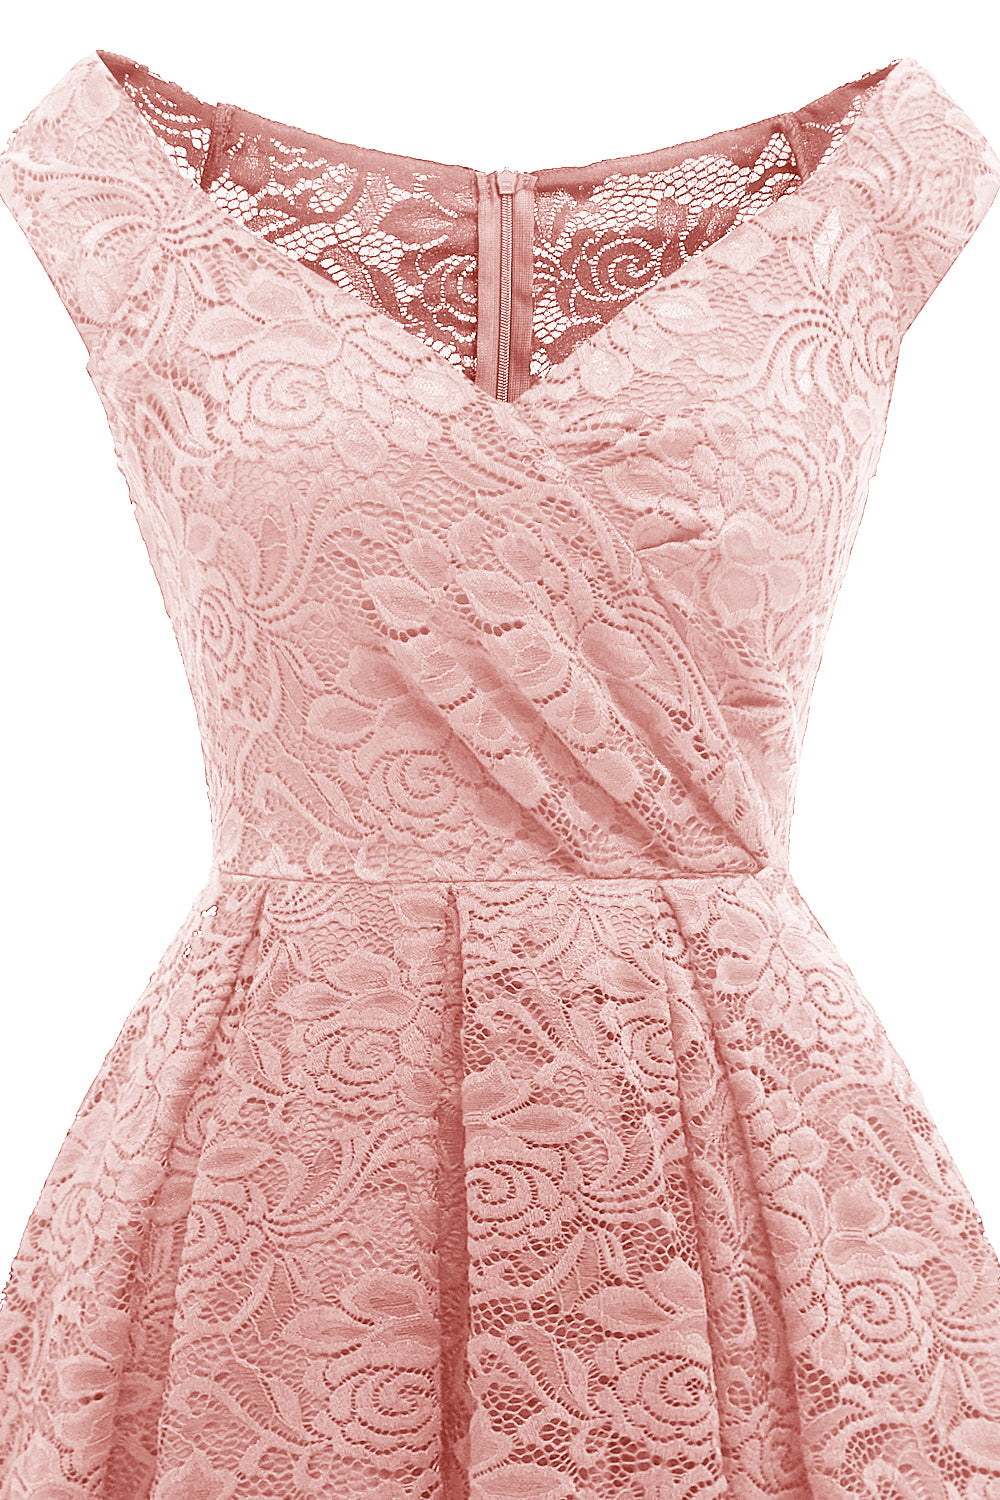 Blush Vintage Lace Party Dress